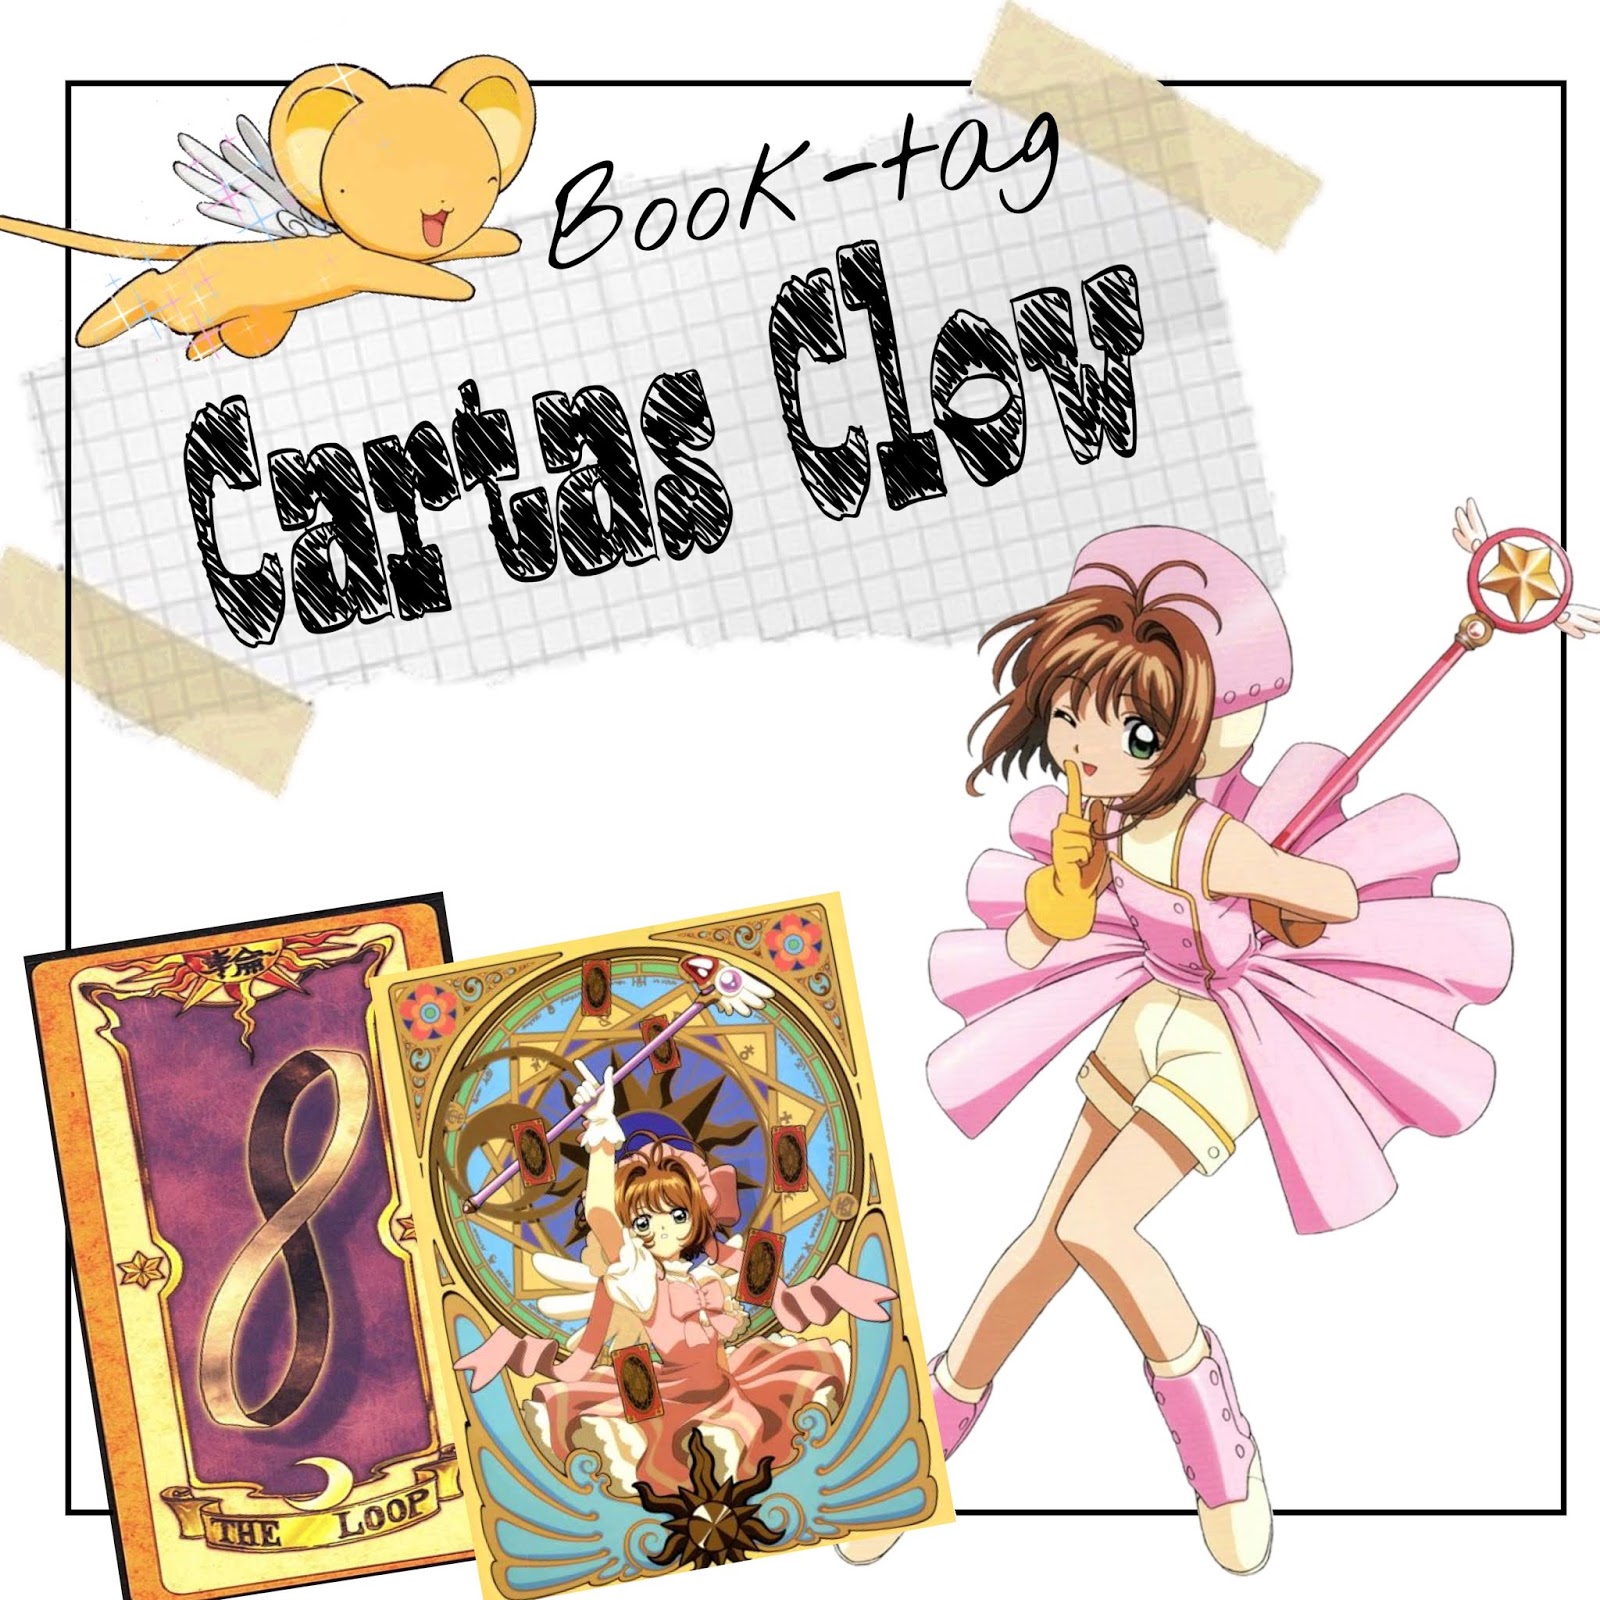 Um baixinho nos Livros: Tag #82: Cartas Clow Book Tag- Sakura Card